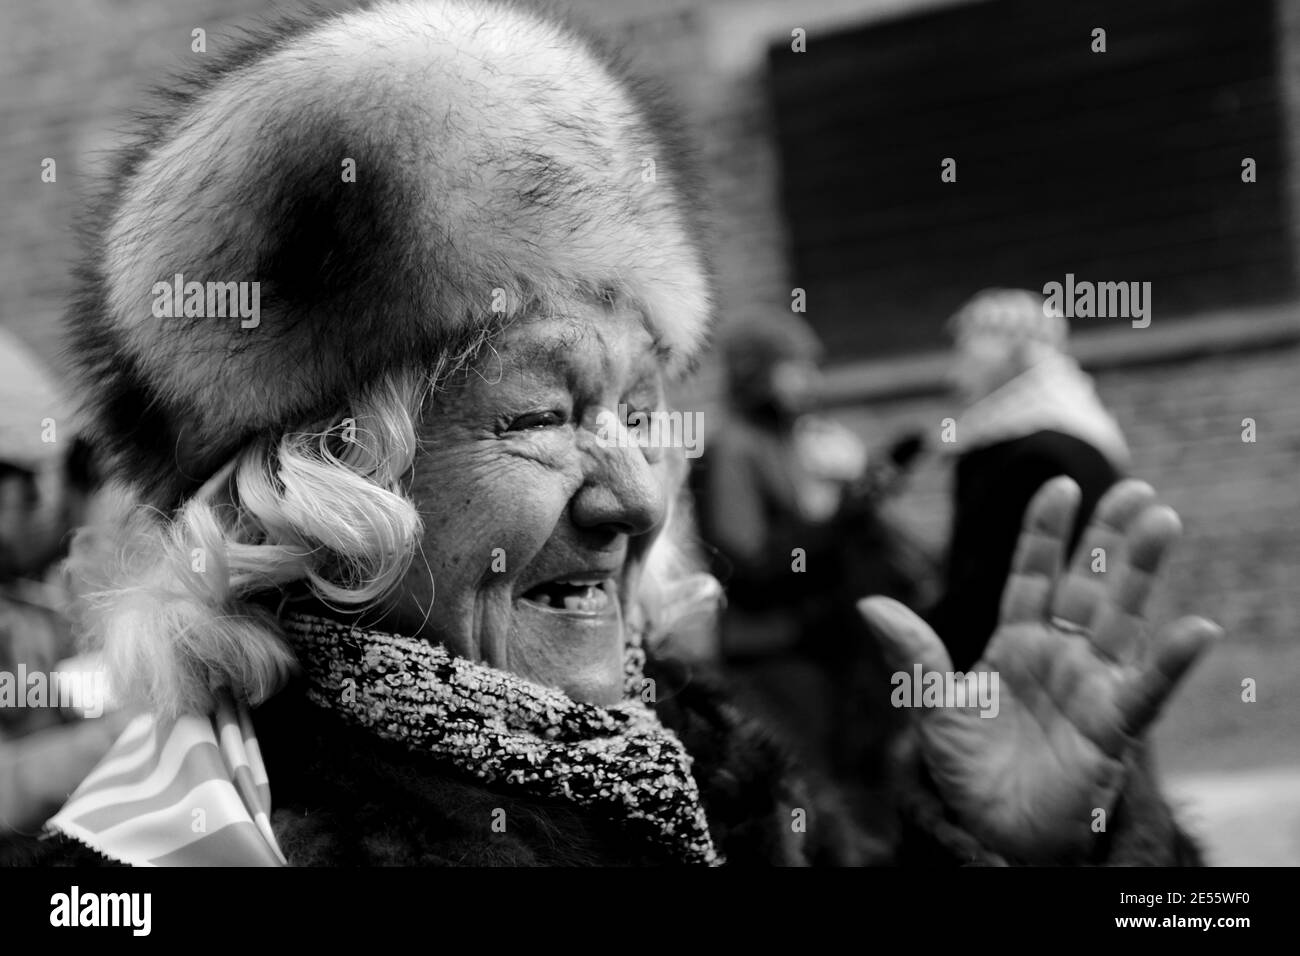 Oswiecim, Polonia - 27 gennaio 2017: 73° anniversario della liberazione di Auschwitz-Birkenau. Il sopravvissuto visita il sito di sterminio di Auschwitz. Foto Stock